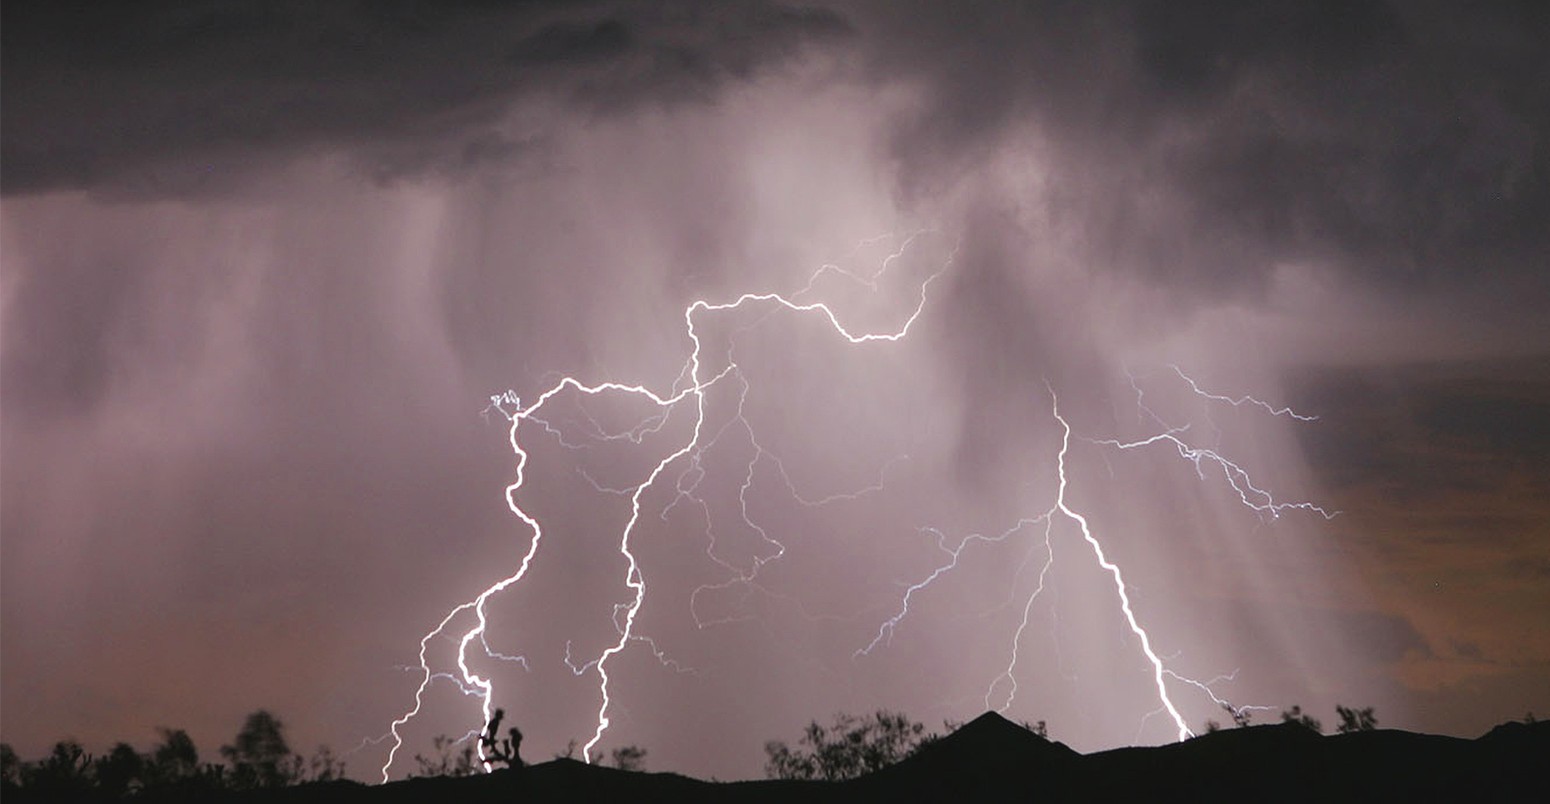 Lightning strikes across the deserts skies near Stateline NV